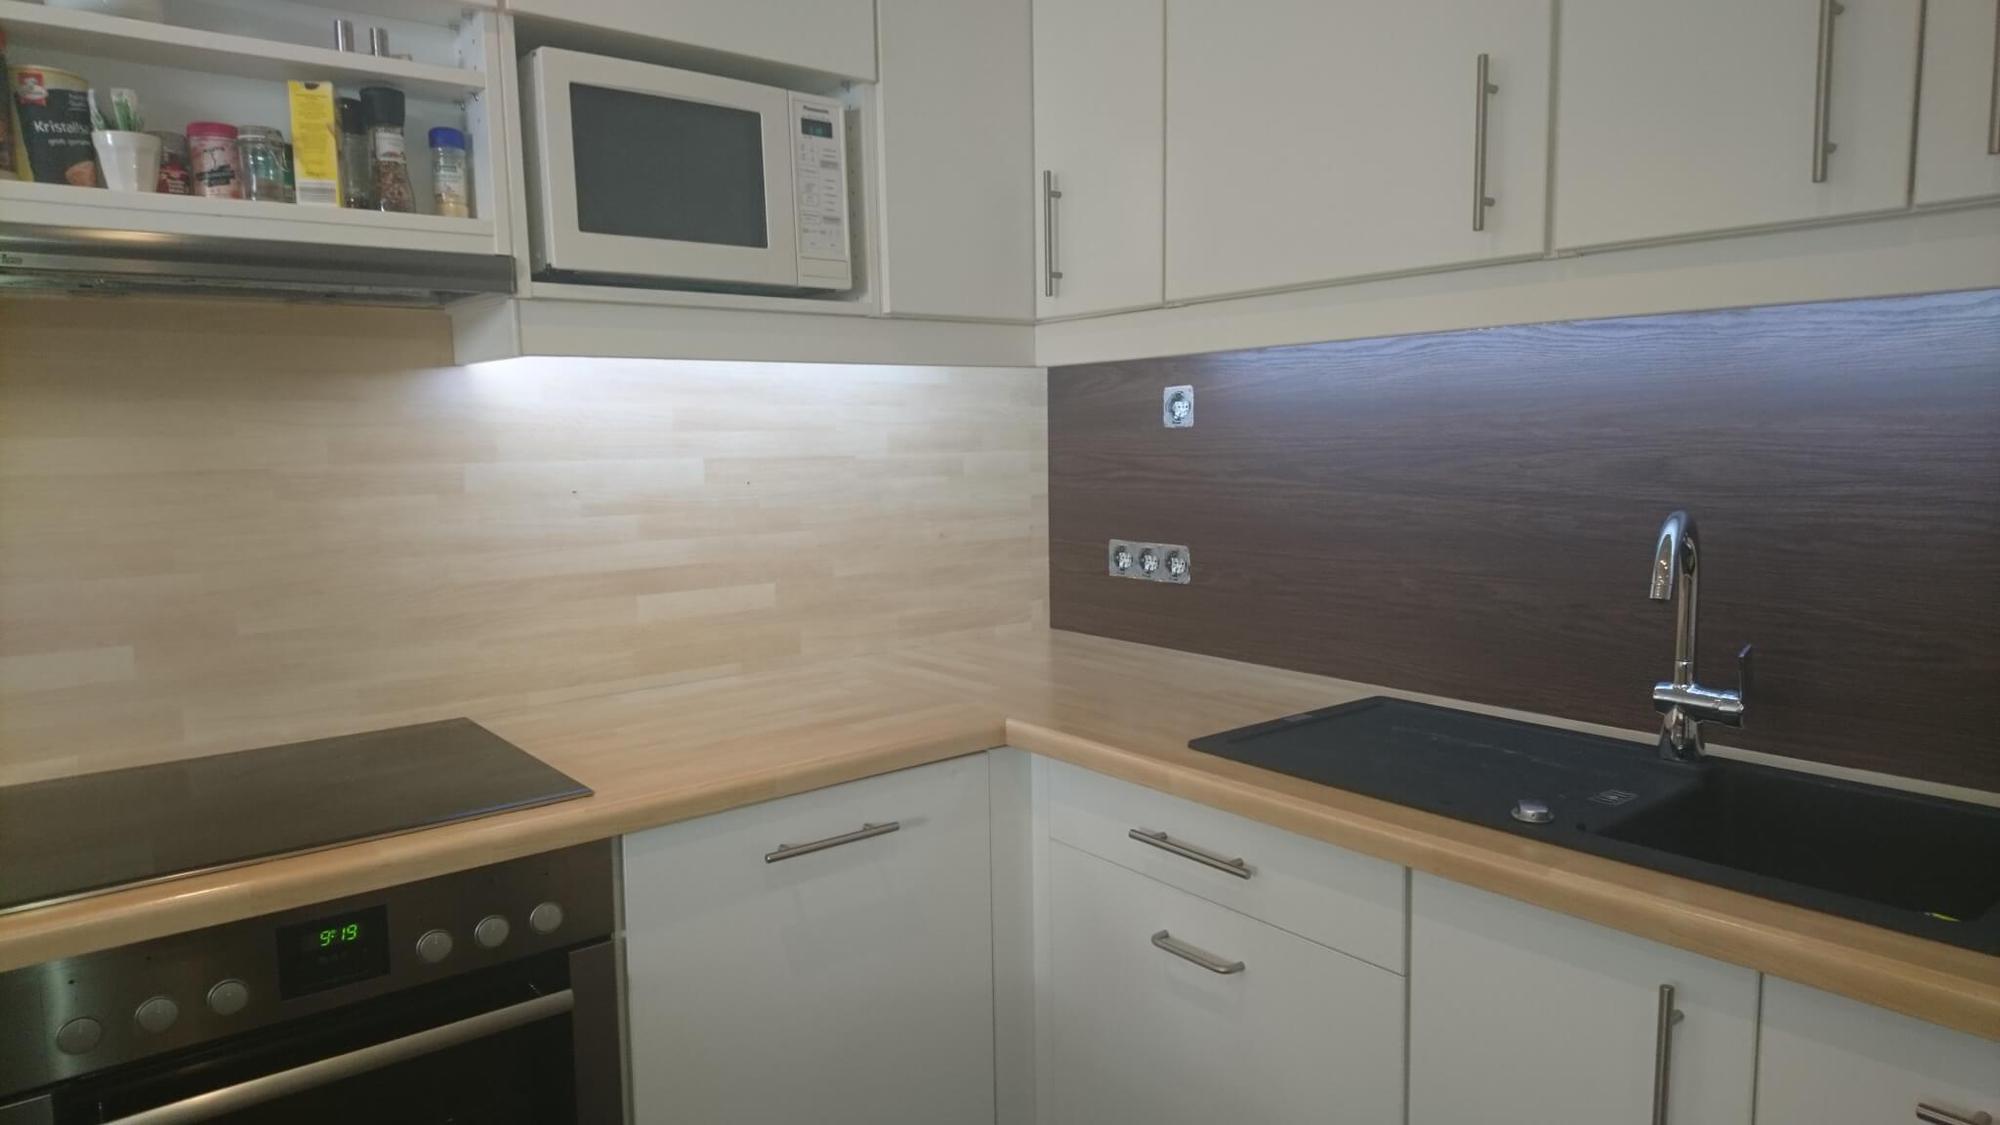 resimdo folie Küche arbeitsplatte spritzschutz Holz dunkel beispiel vergleich